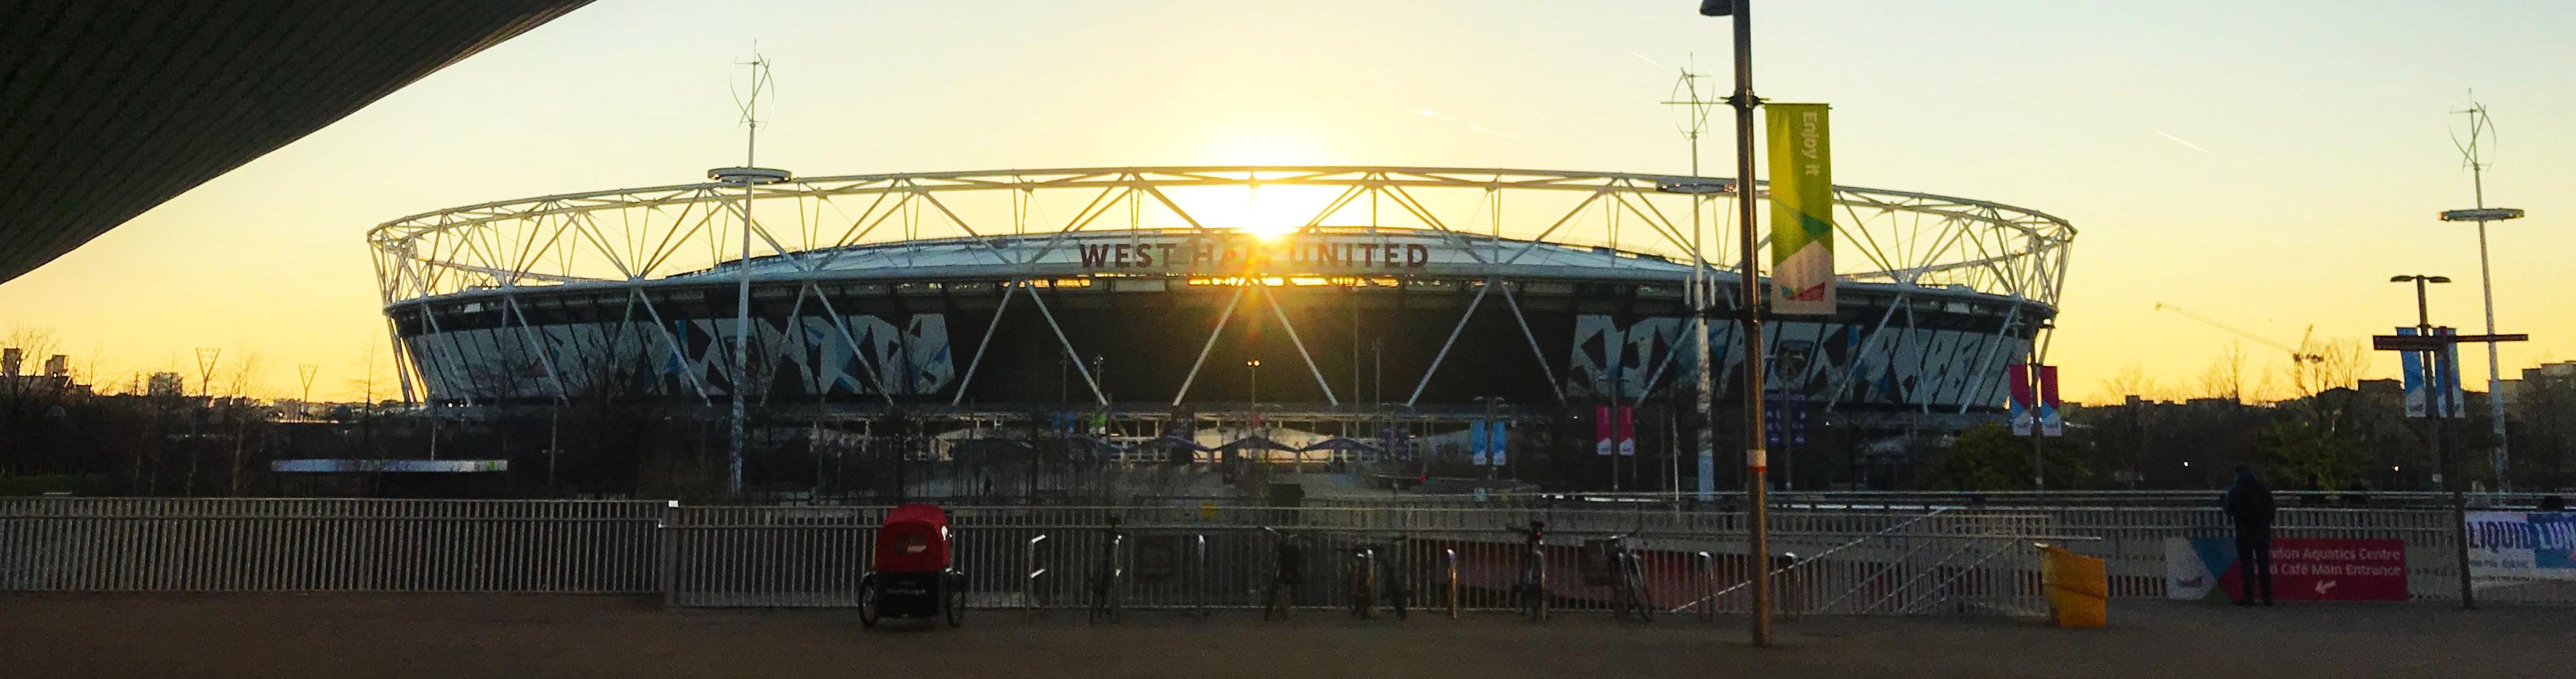 West Ham United soccer stadium at sunset.